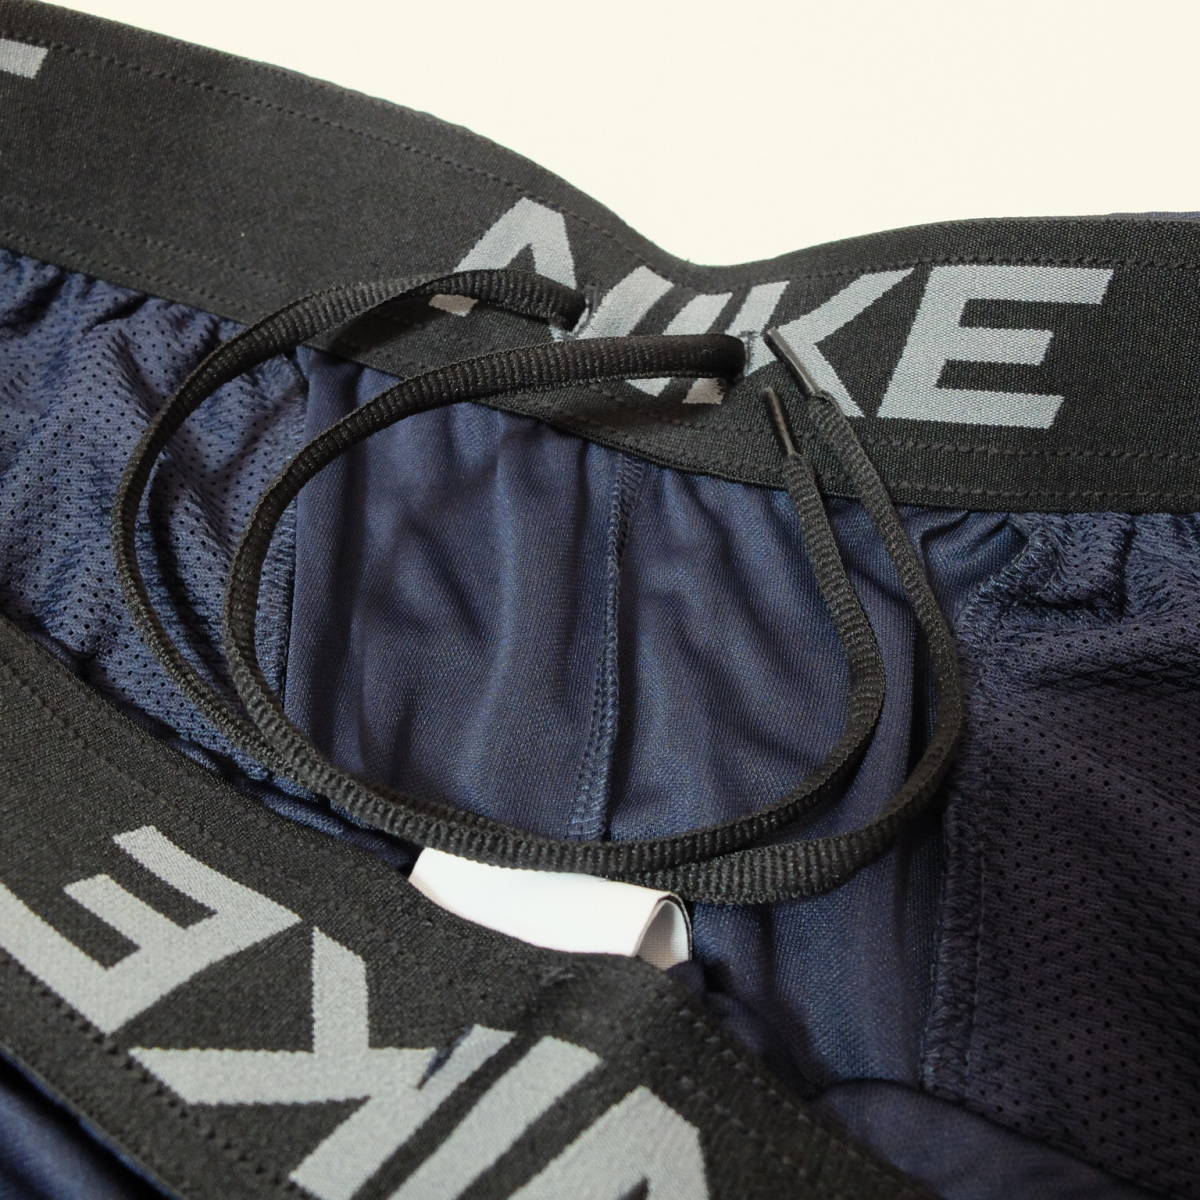 [新品 送料込] メンズLサイズ ナイキ Dri-FIT メンズ ニット トレーニングショートパンツ Nike Dri-FIT Men's Knit Training Shorts DD1888_ドローコードが付いた伸縮性のウエスト